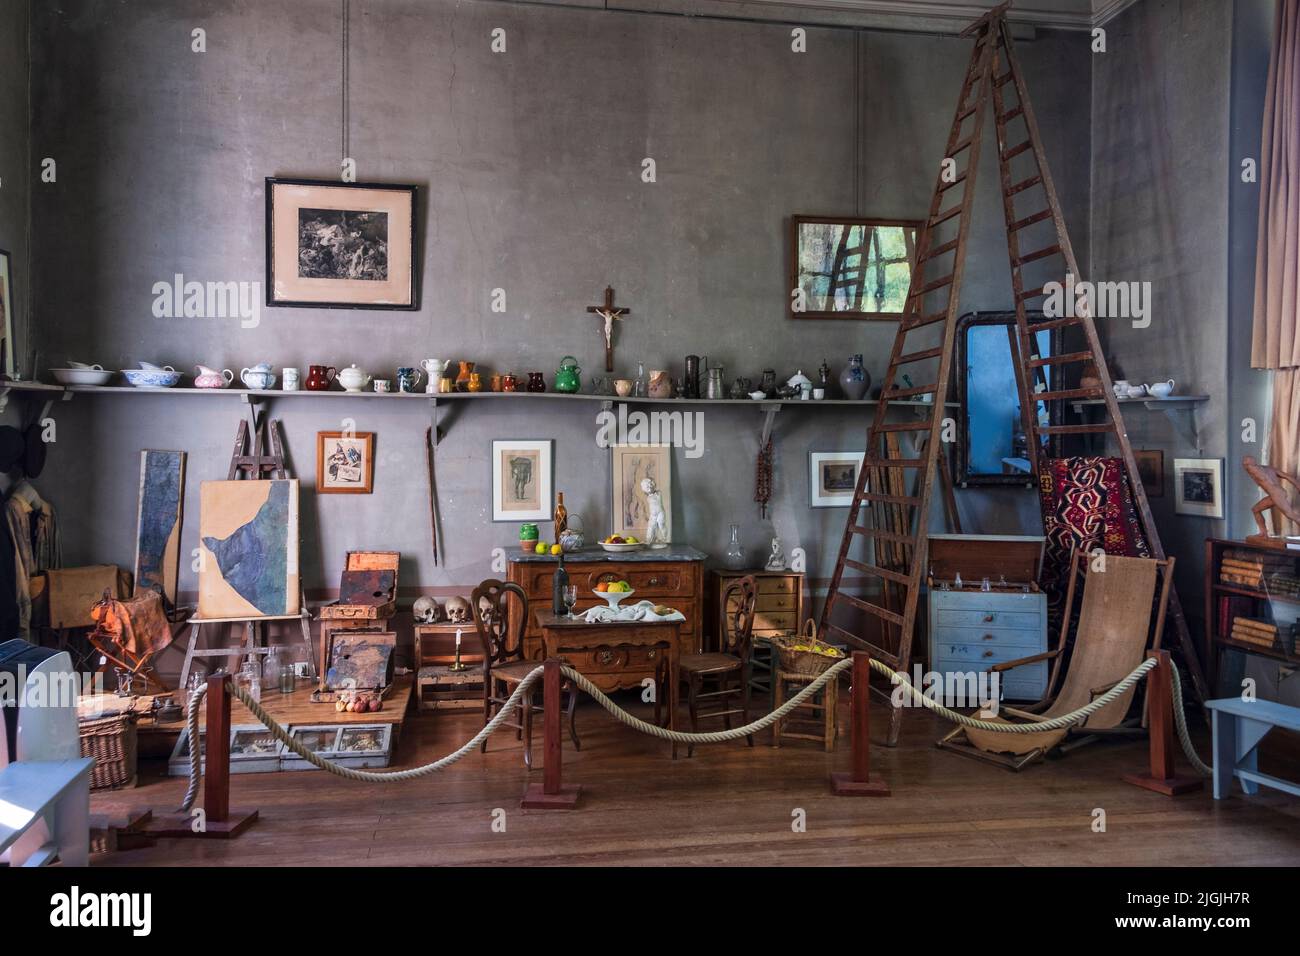 Atelier de Cézanne - intérieur de studio d'art, Aix-en-Provence, France Banque D'Images